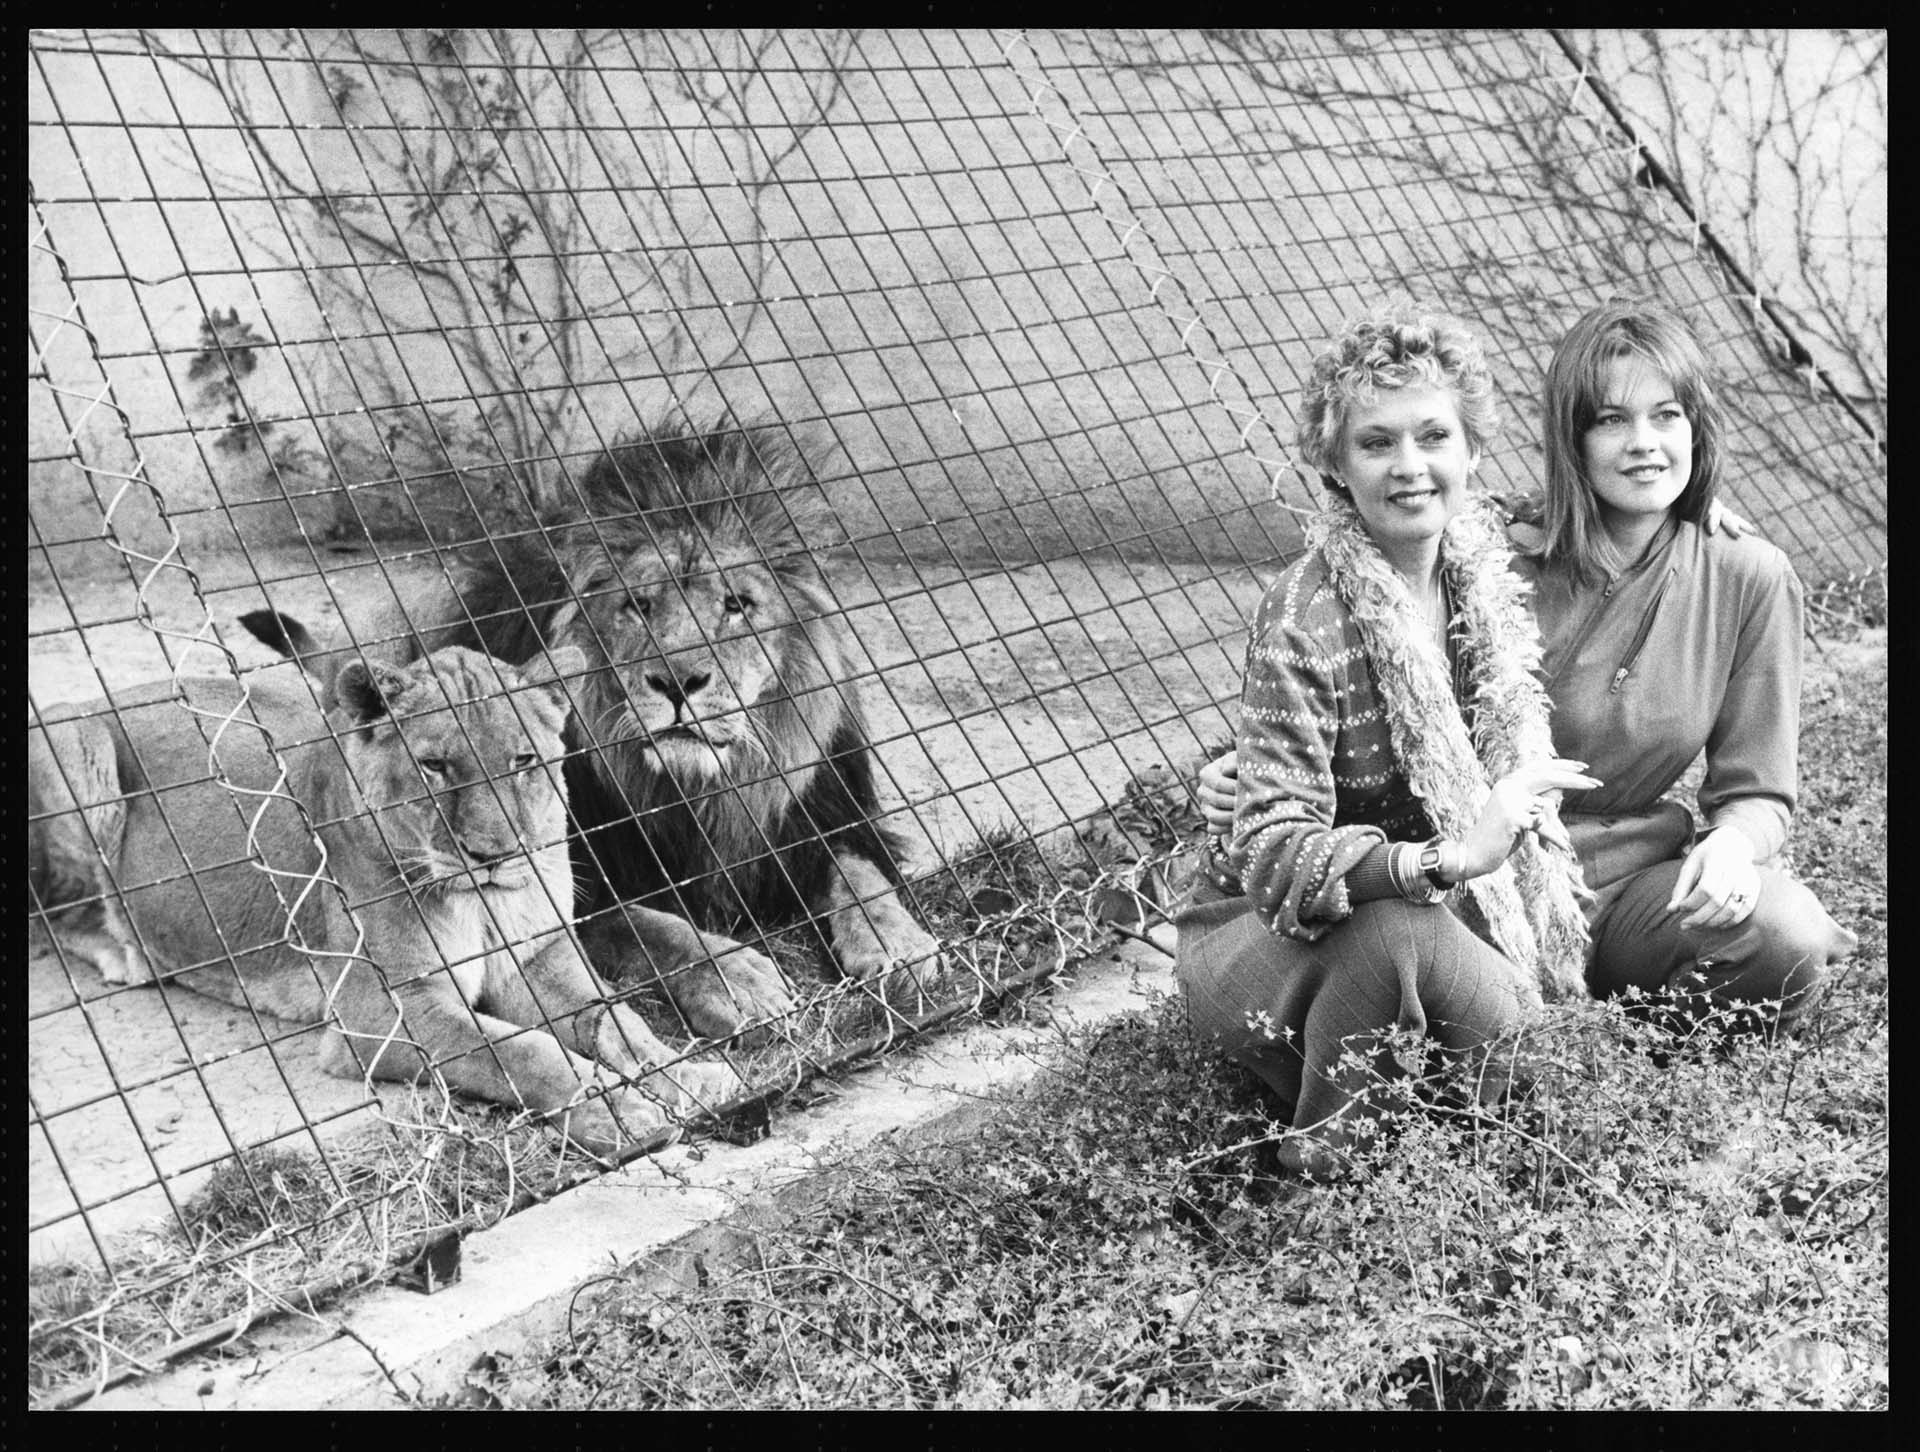 La actriz Tippi Hedren y su jija Melanie Griffith junto a los leones que tanto amaron en su vida (Hulton-Deutsch Collection/CORBIS/Corbis via Getty Images)